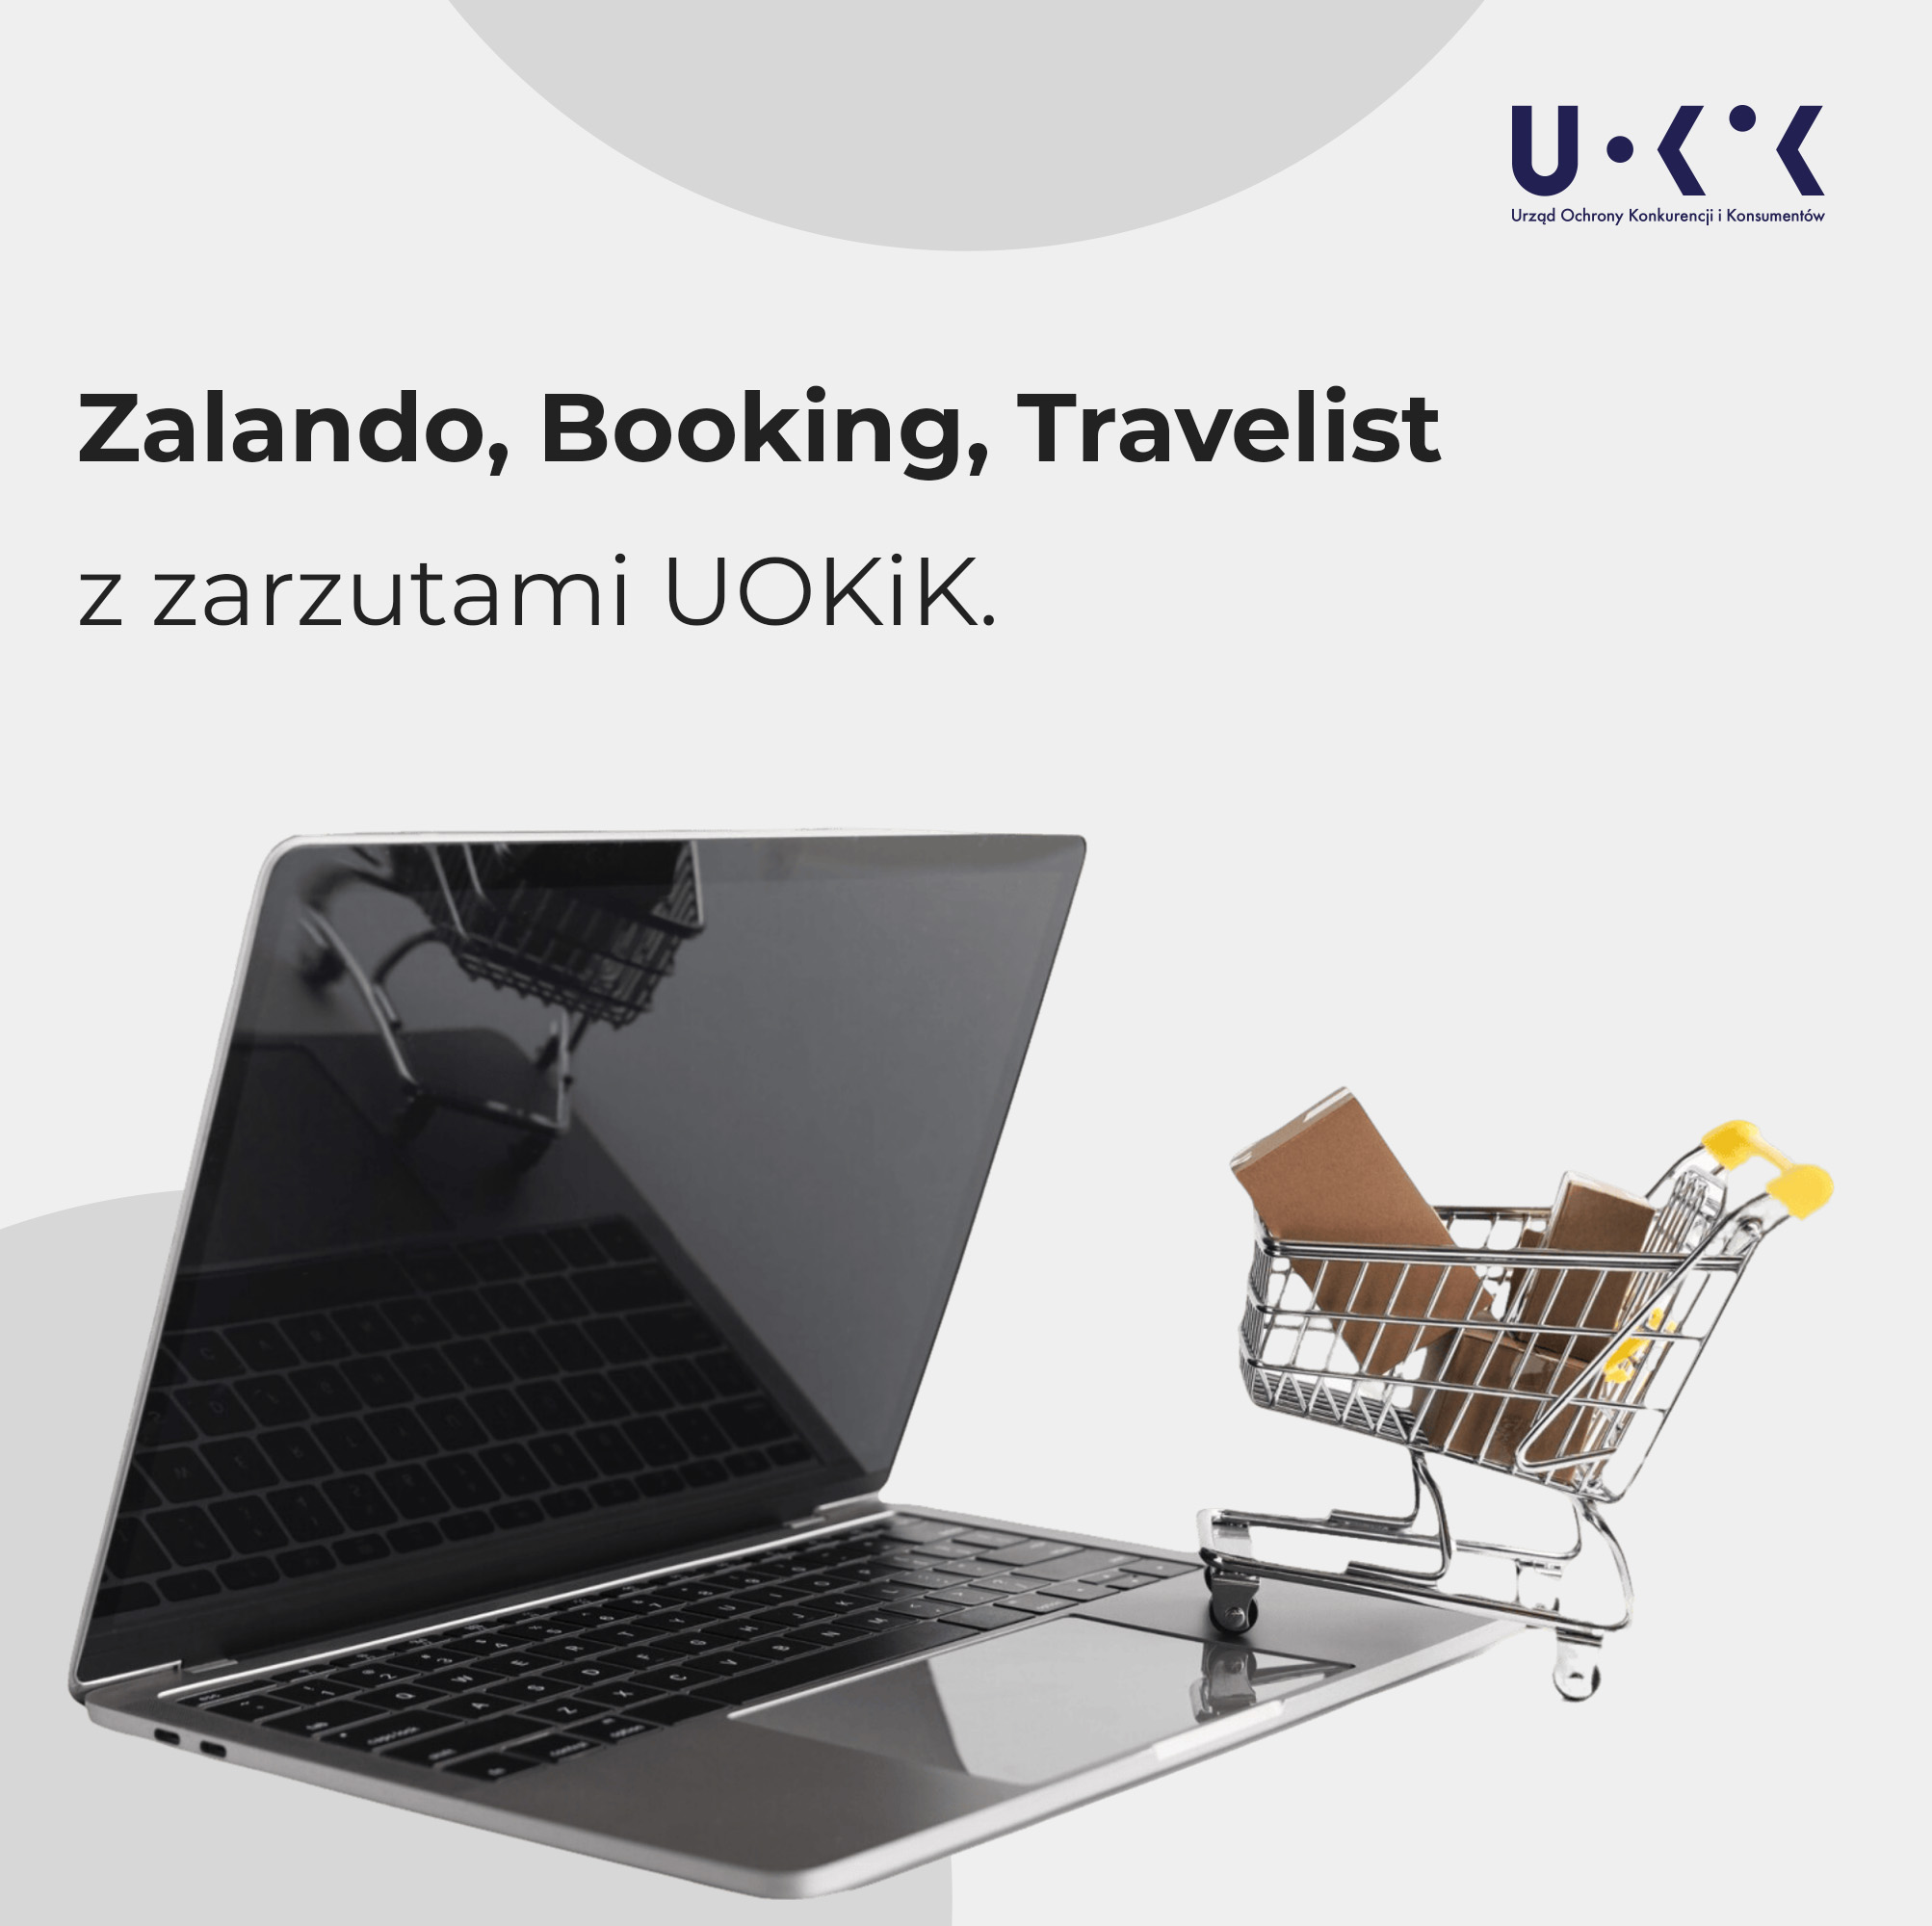 Zalando, Booking, Travelist z zarzutami UOKiK. Powyżej napisu logo UOKiK, poniżej otworzony laptop i wjeżdząjący na ten laptop załadowany wózek sklepowy.